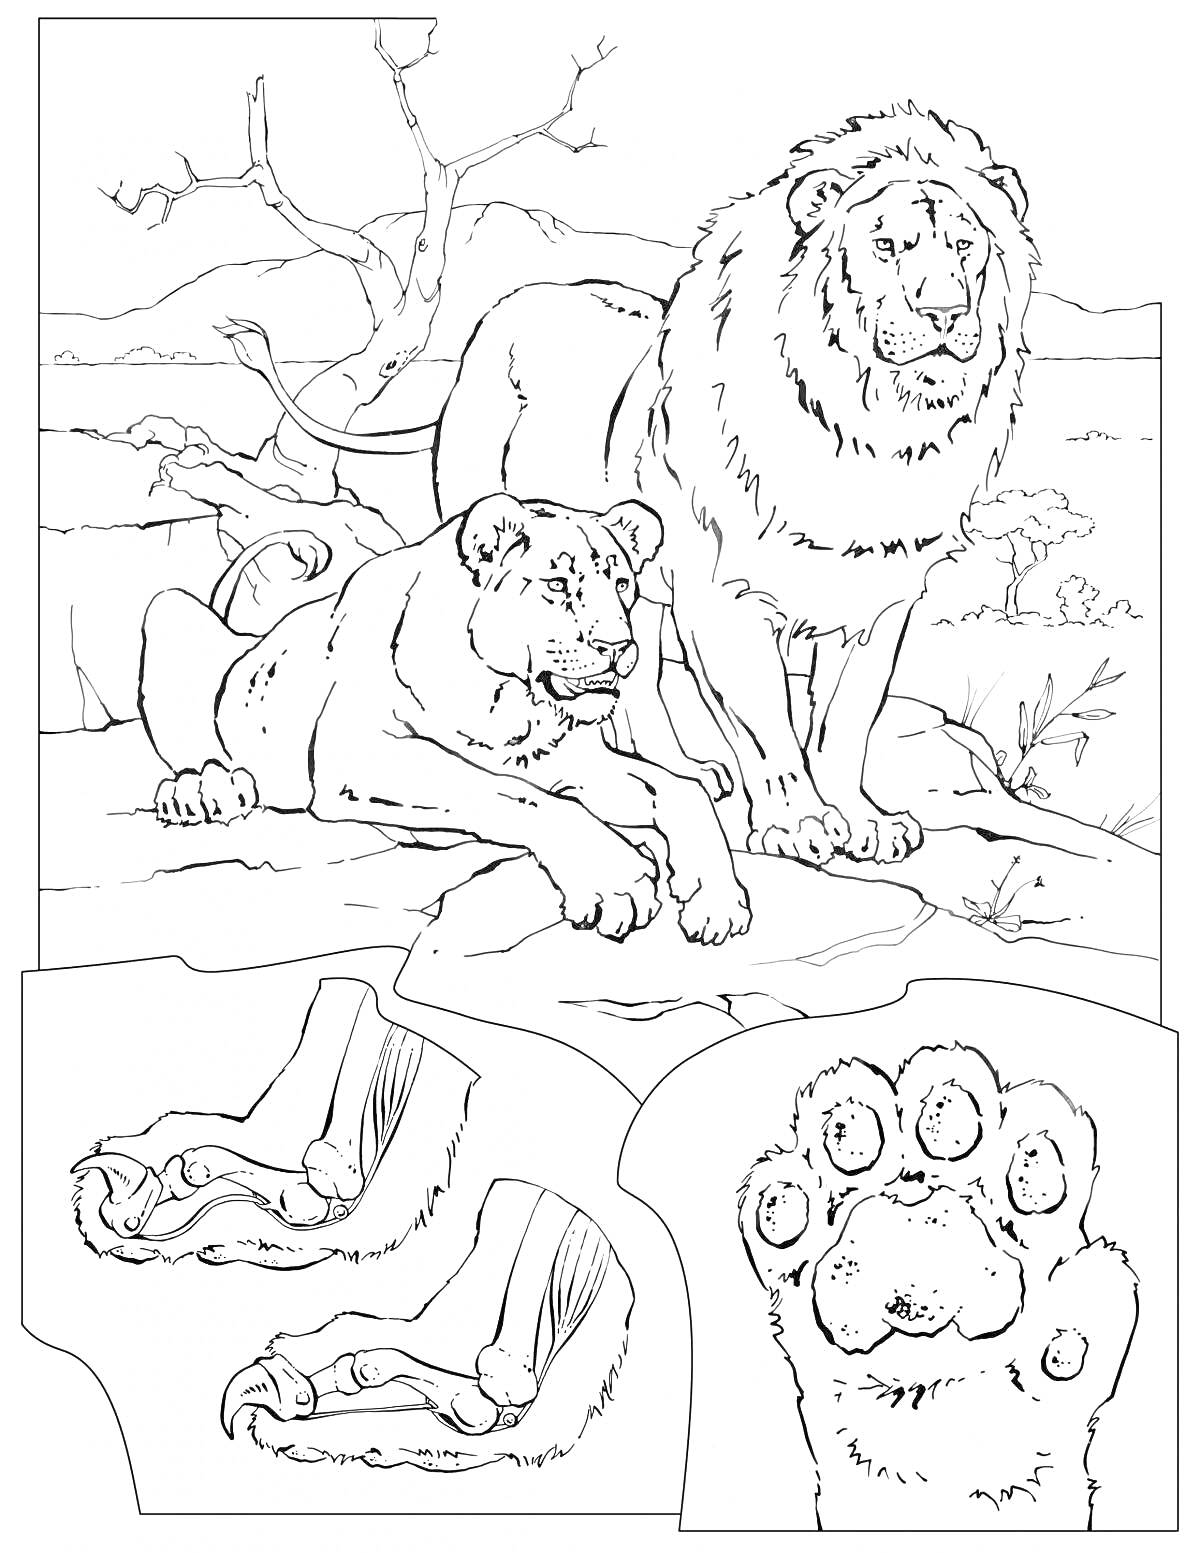 Раскраска Лев и львица на скале с изображениями лап